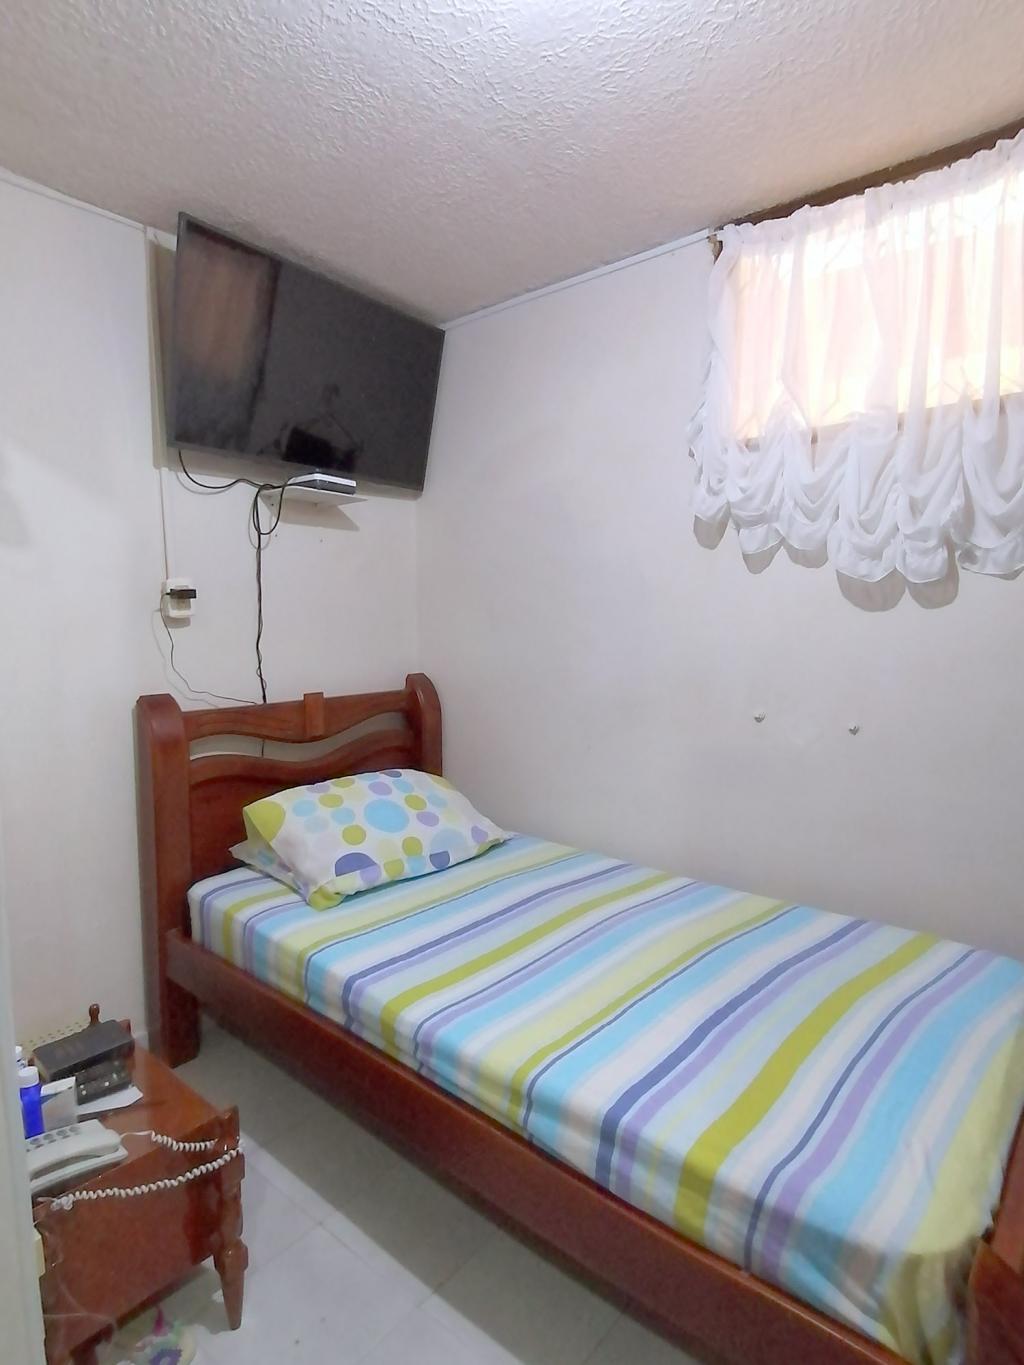 Apartamento en Venta por Issa Saieh Inmobiliaria ubicado en Barranquilla. El código del inmueble es: 7255470 Imágen 14